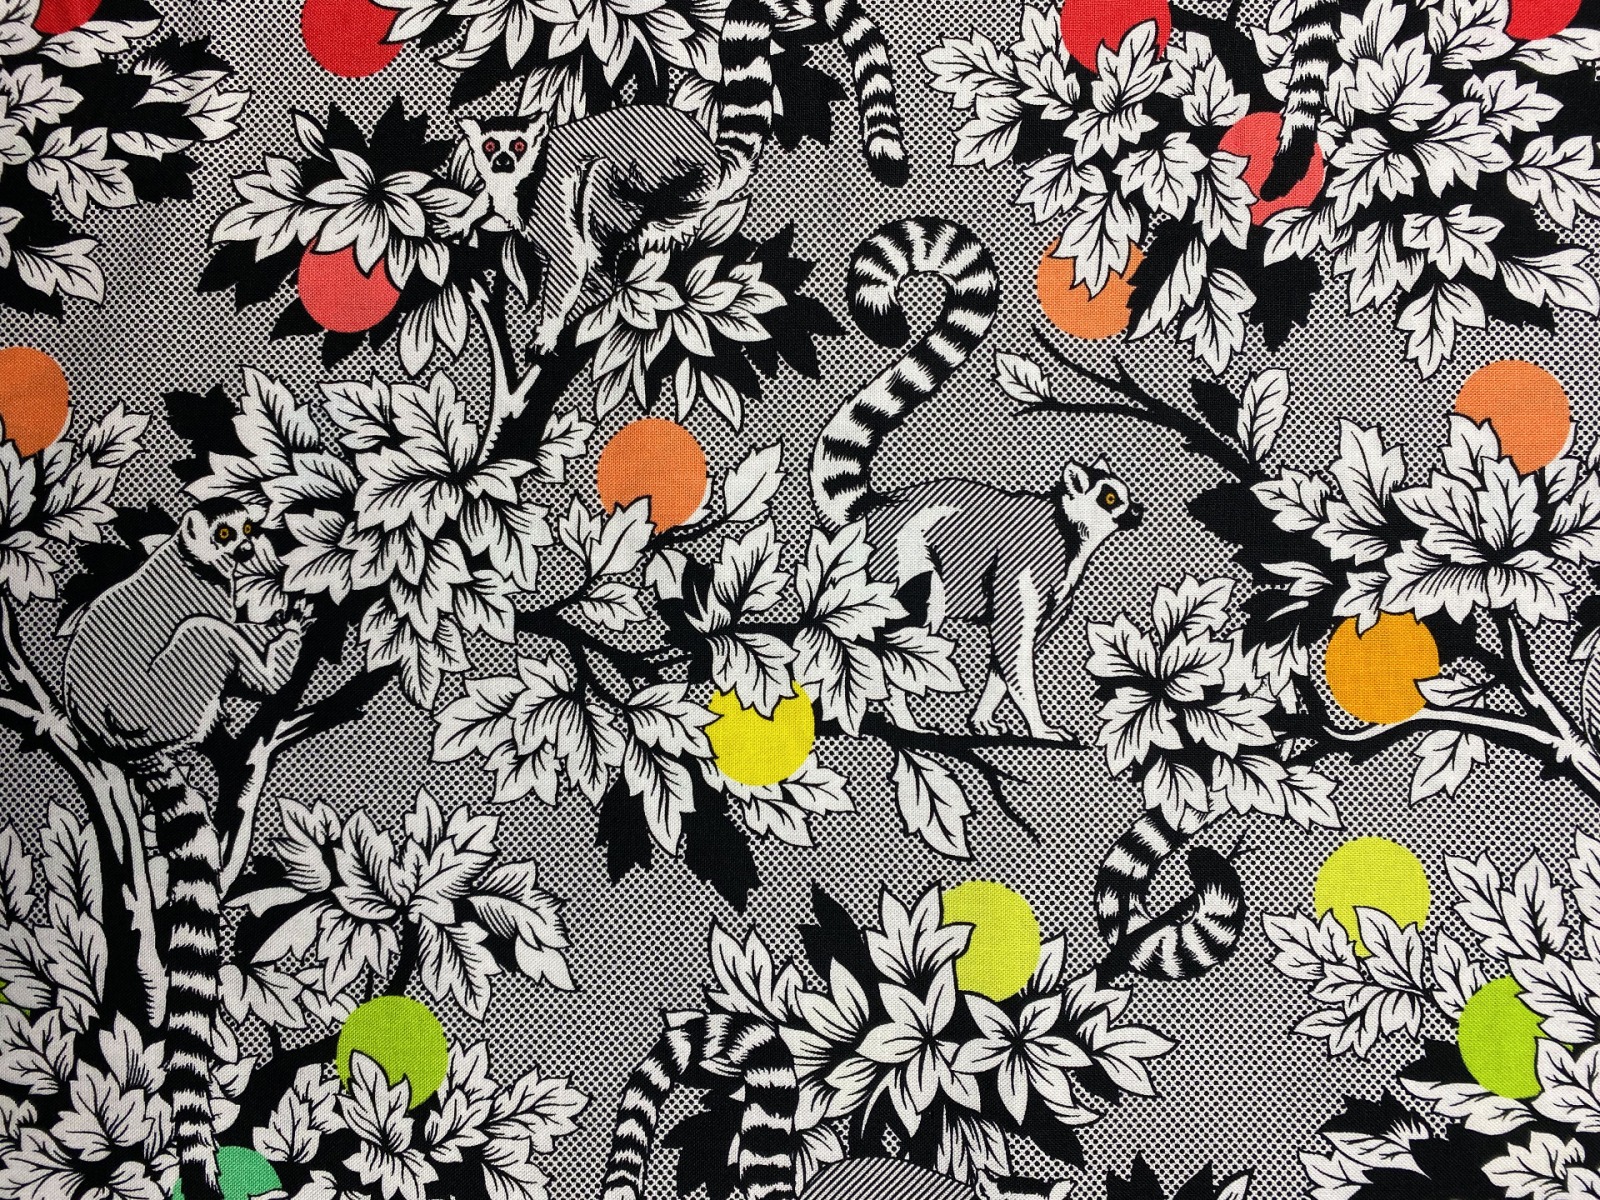 Stoff Lemur Me Alone - 100 Baumwolle - schwarz/weiß - Patchwork - Free Spirit Fabrics - Tula Pink - Kattas -Lemuren 6